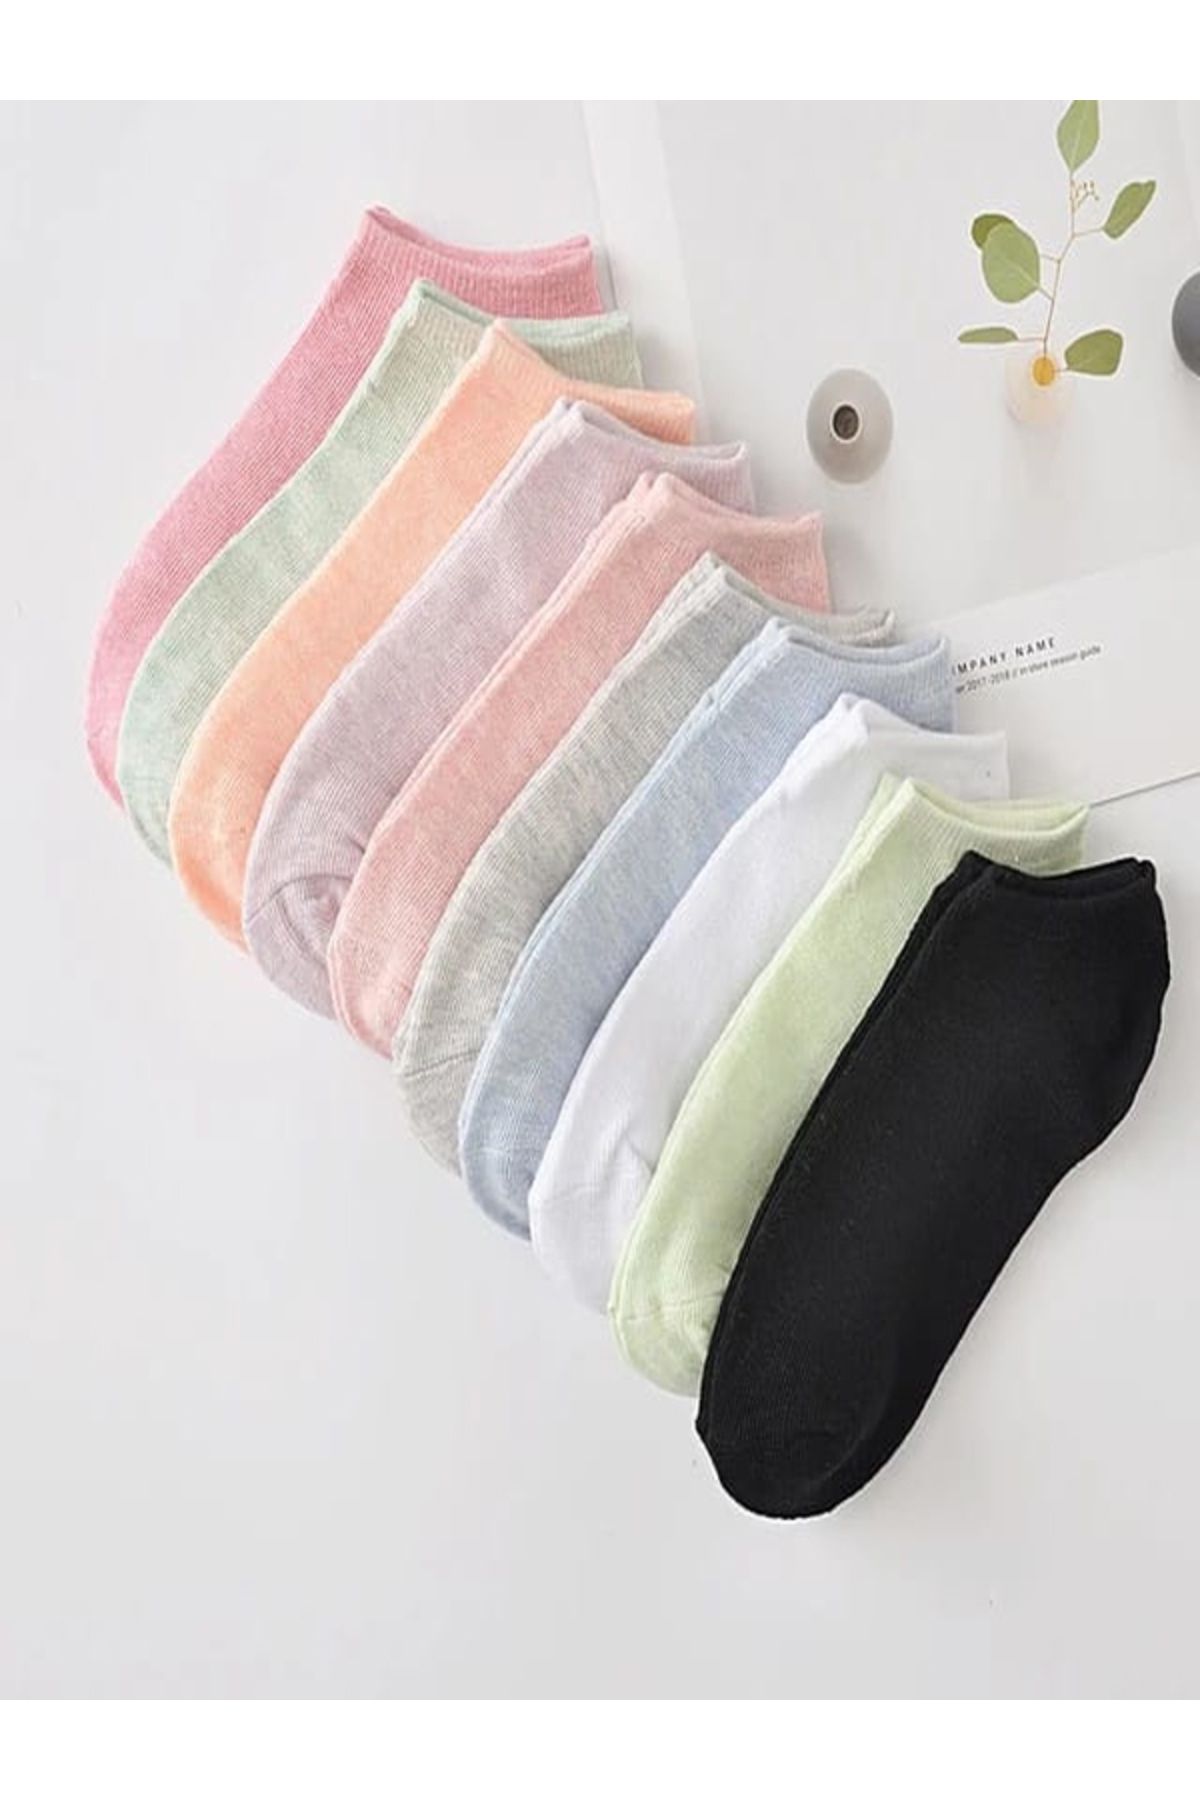 nesterinzar Kadın %100 Pamuk Karışık Renkli  Patik Çorap Seti 6 Çift